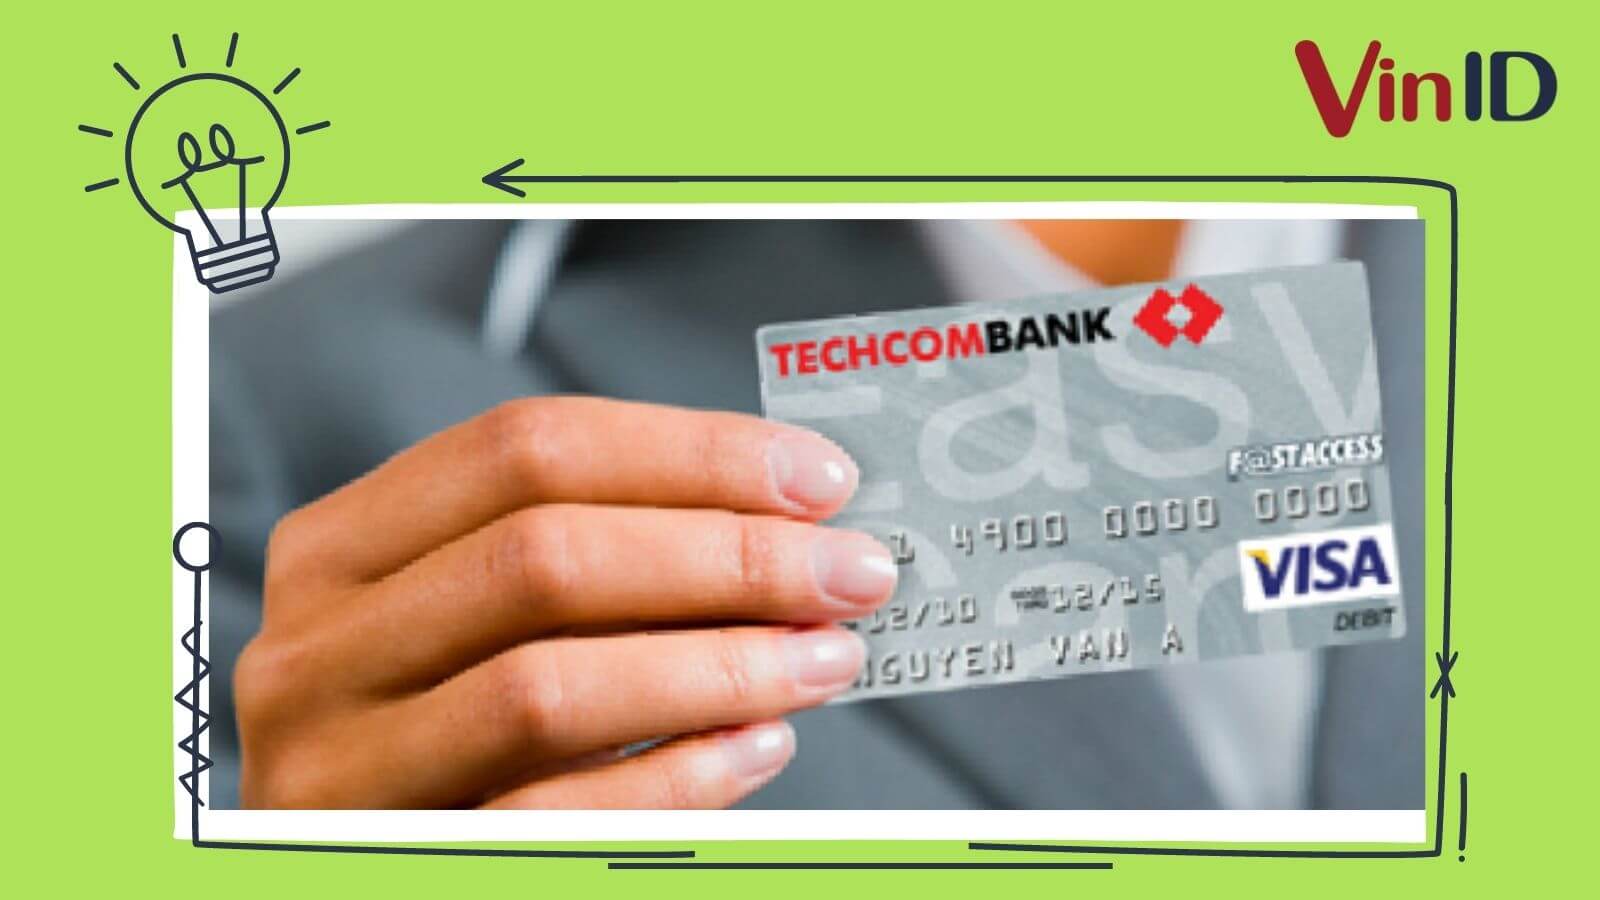 Thẻ thanh toán Techcombank là loại thẻ ghi nợ (Debit Card)